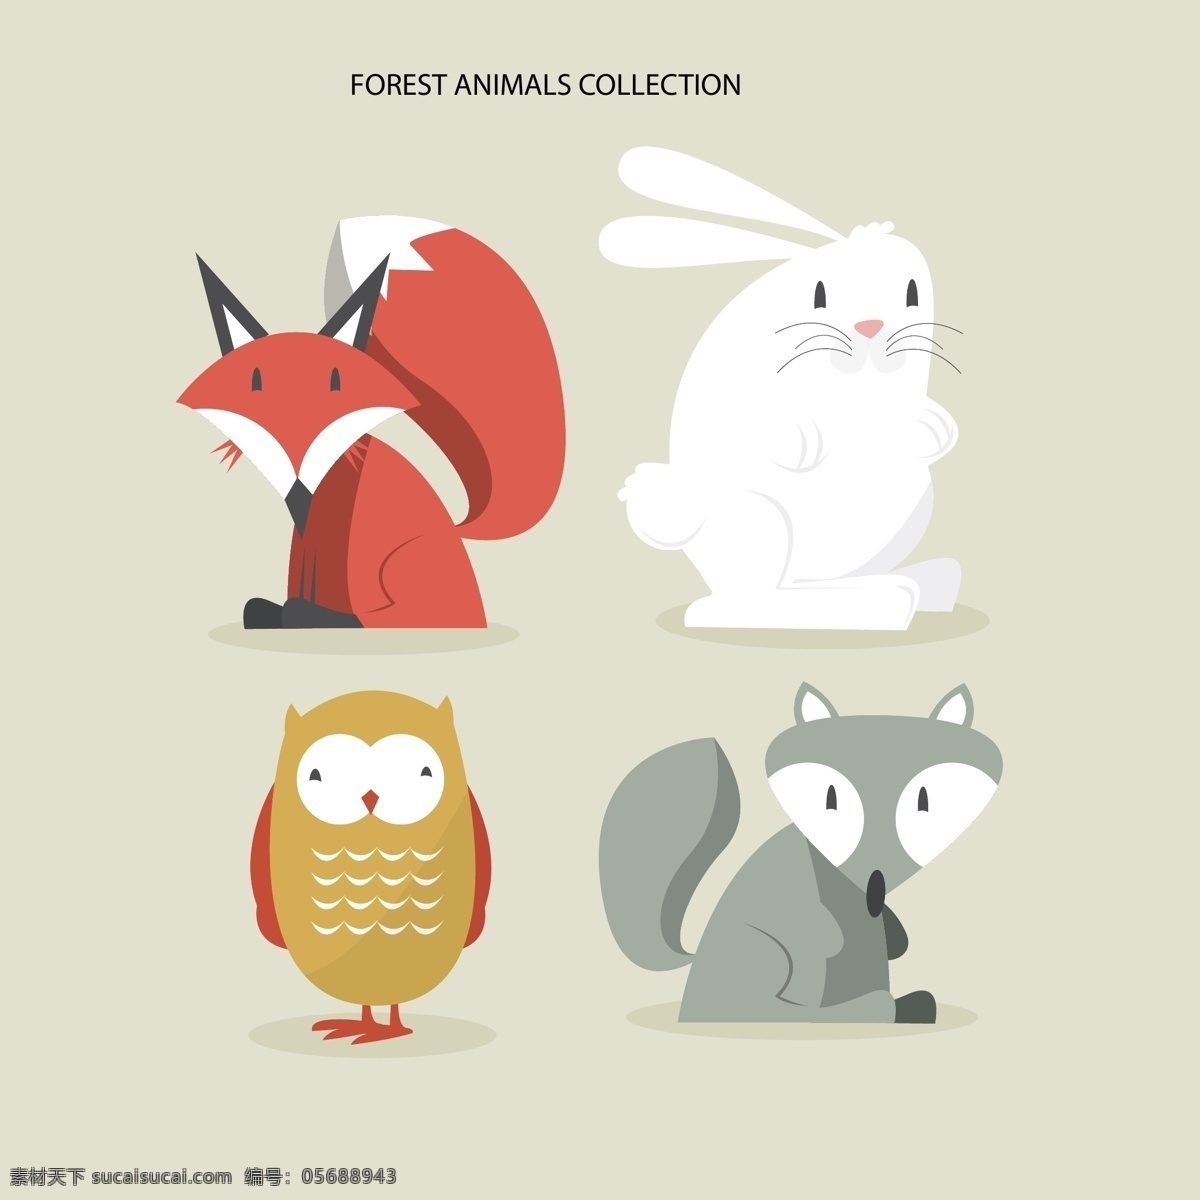 四 可爱 森林 动物 手 自然 画 猫头鹰 兔 绘画 狐狸 兔子 可爱的 抽纱 野生 尼斯 野生动物 浣熊 白色